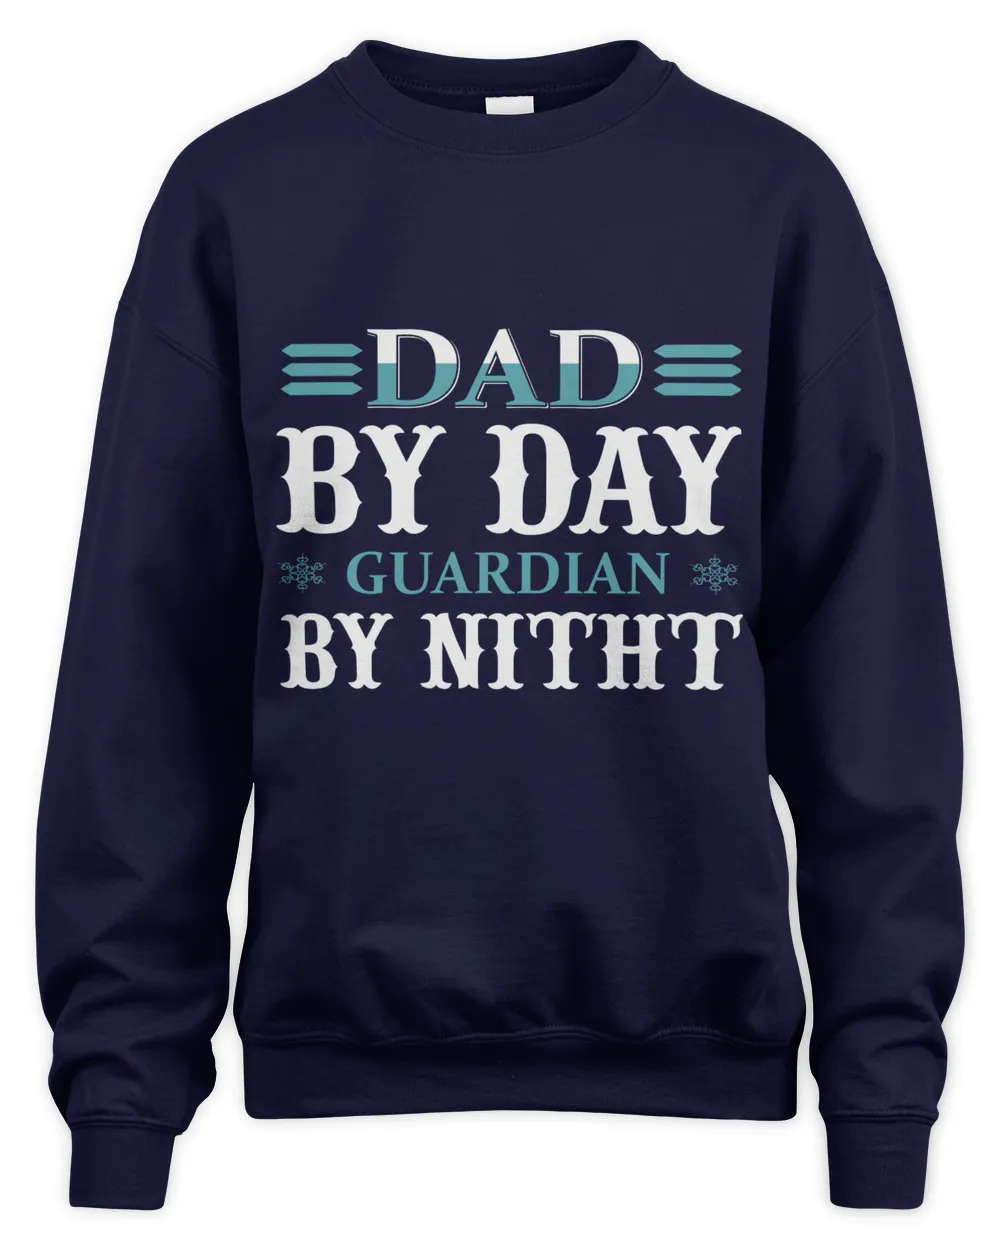 Father's Day Gifts, Father's Day Shirts, Father's Day Gift Ideas, Father's Day Gifts 2022, Gifts for Dad (68)